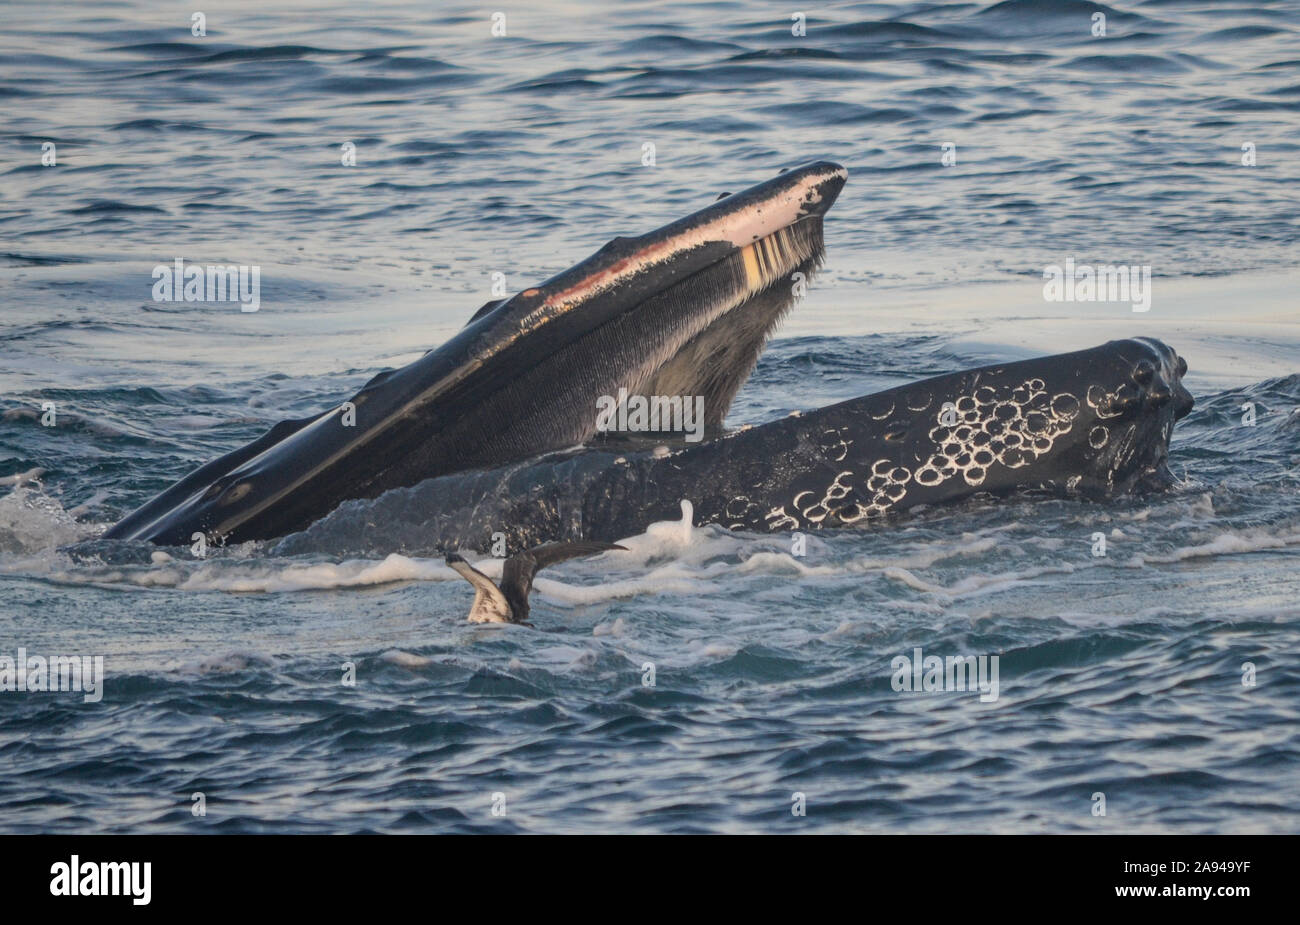 Close-up de ballena con barbas de cabeza mostrando en la parte superior de la boca durante la alimentación de la burbuja. (Megaptera novaeangliae) Foto de stock